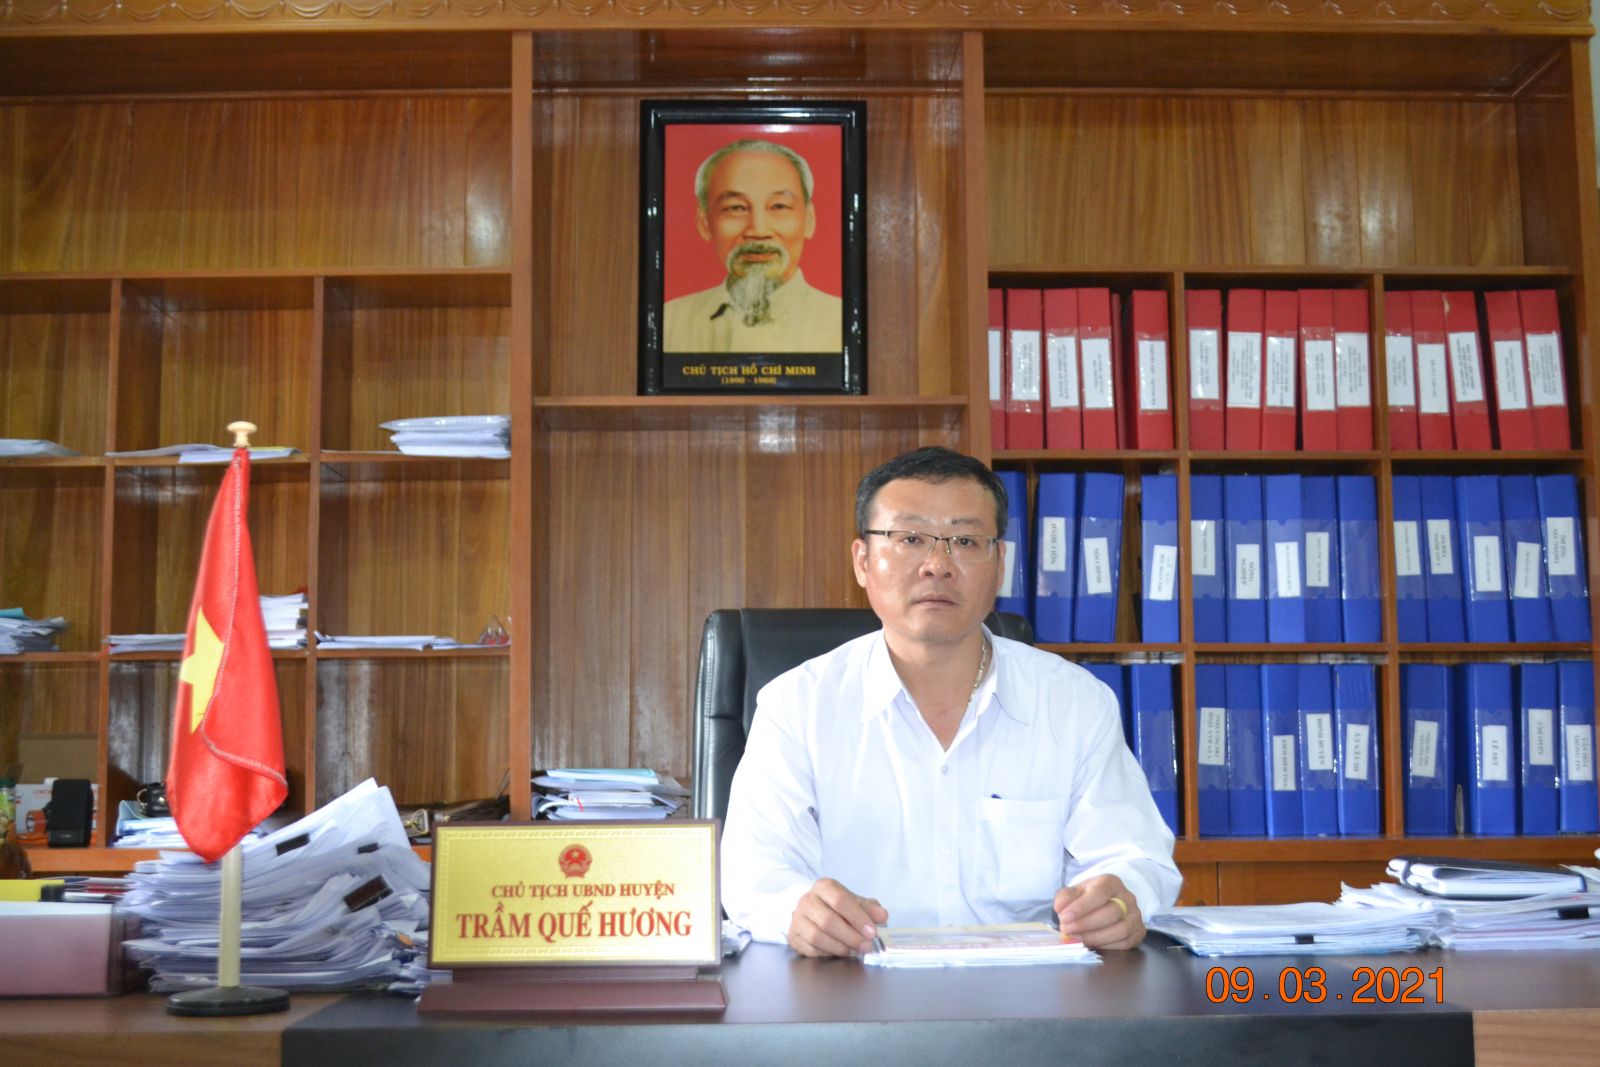 Ông Trầm Quế Hương, Chủ tịch UBND huyện Tiên Phước